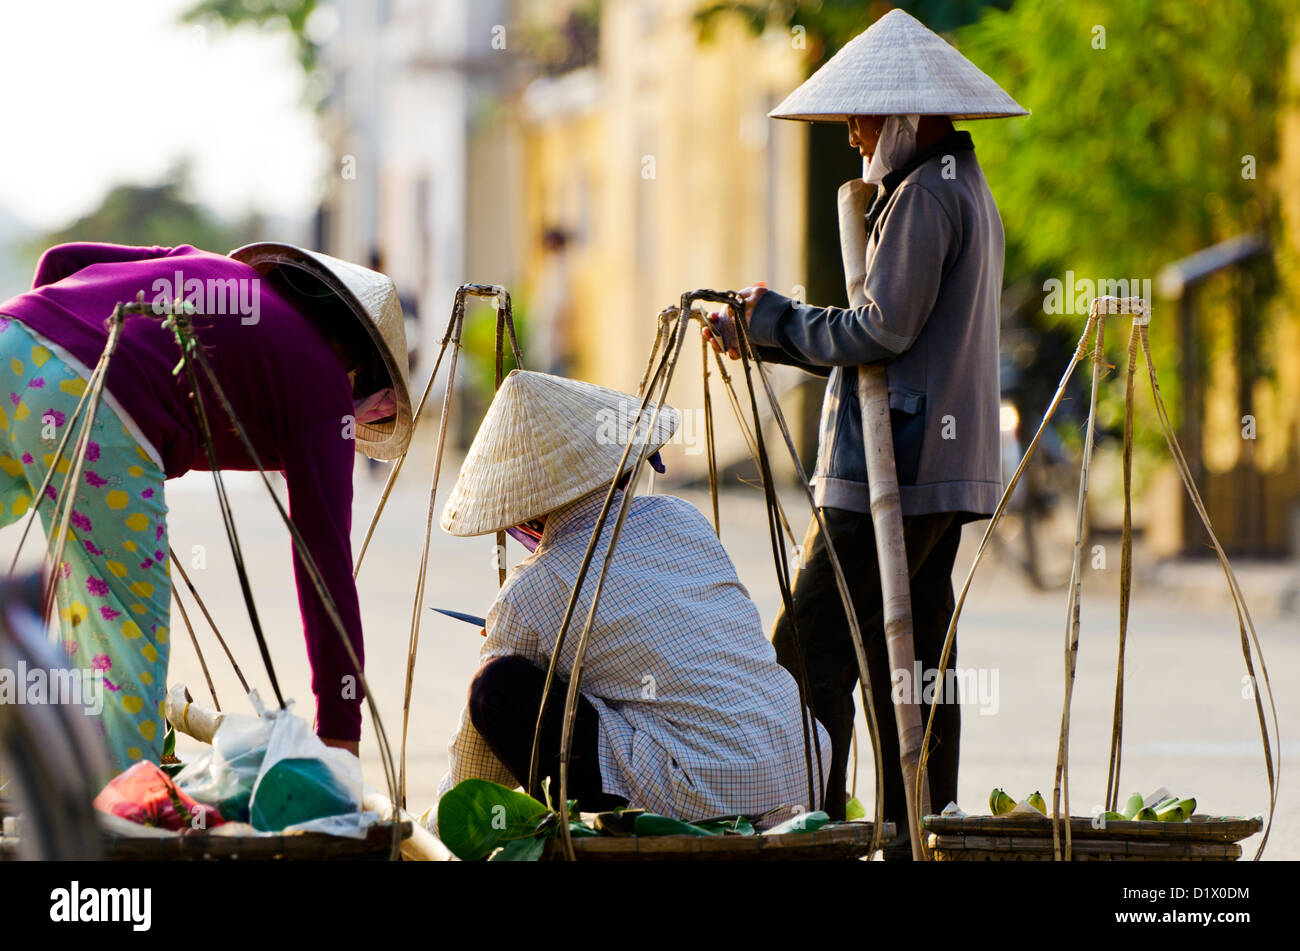 Escena callejera, Hoi An, Vietnam Foto de stock